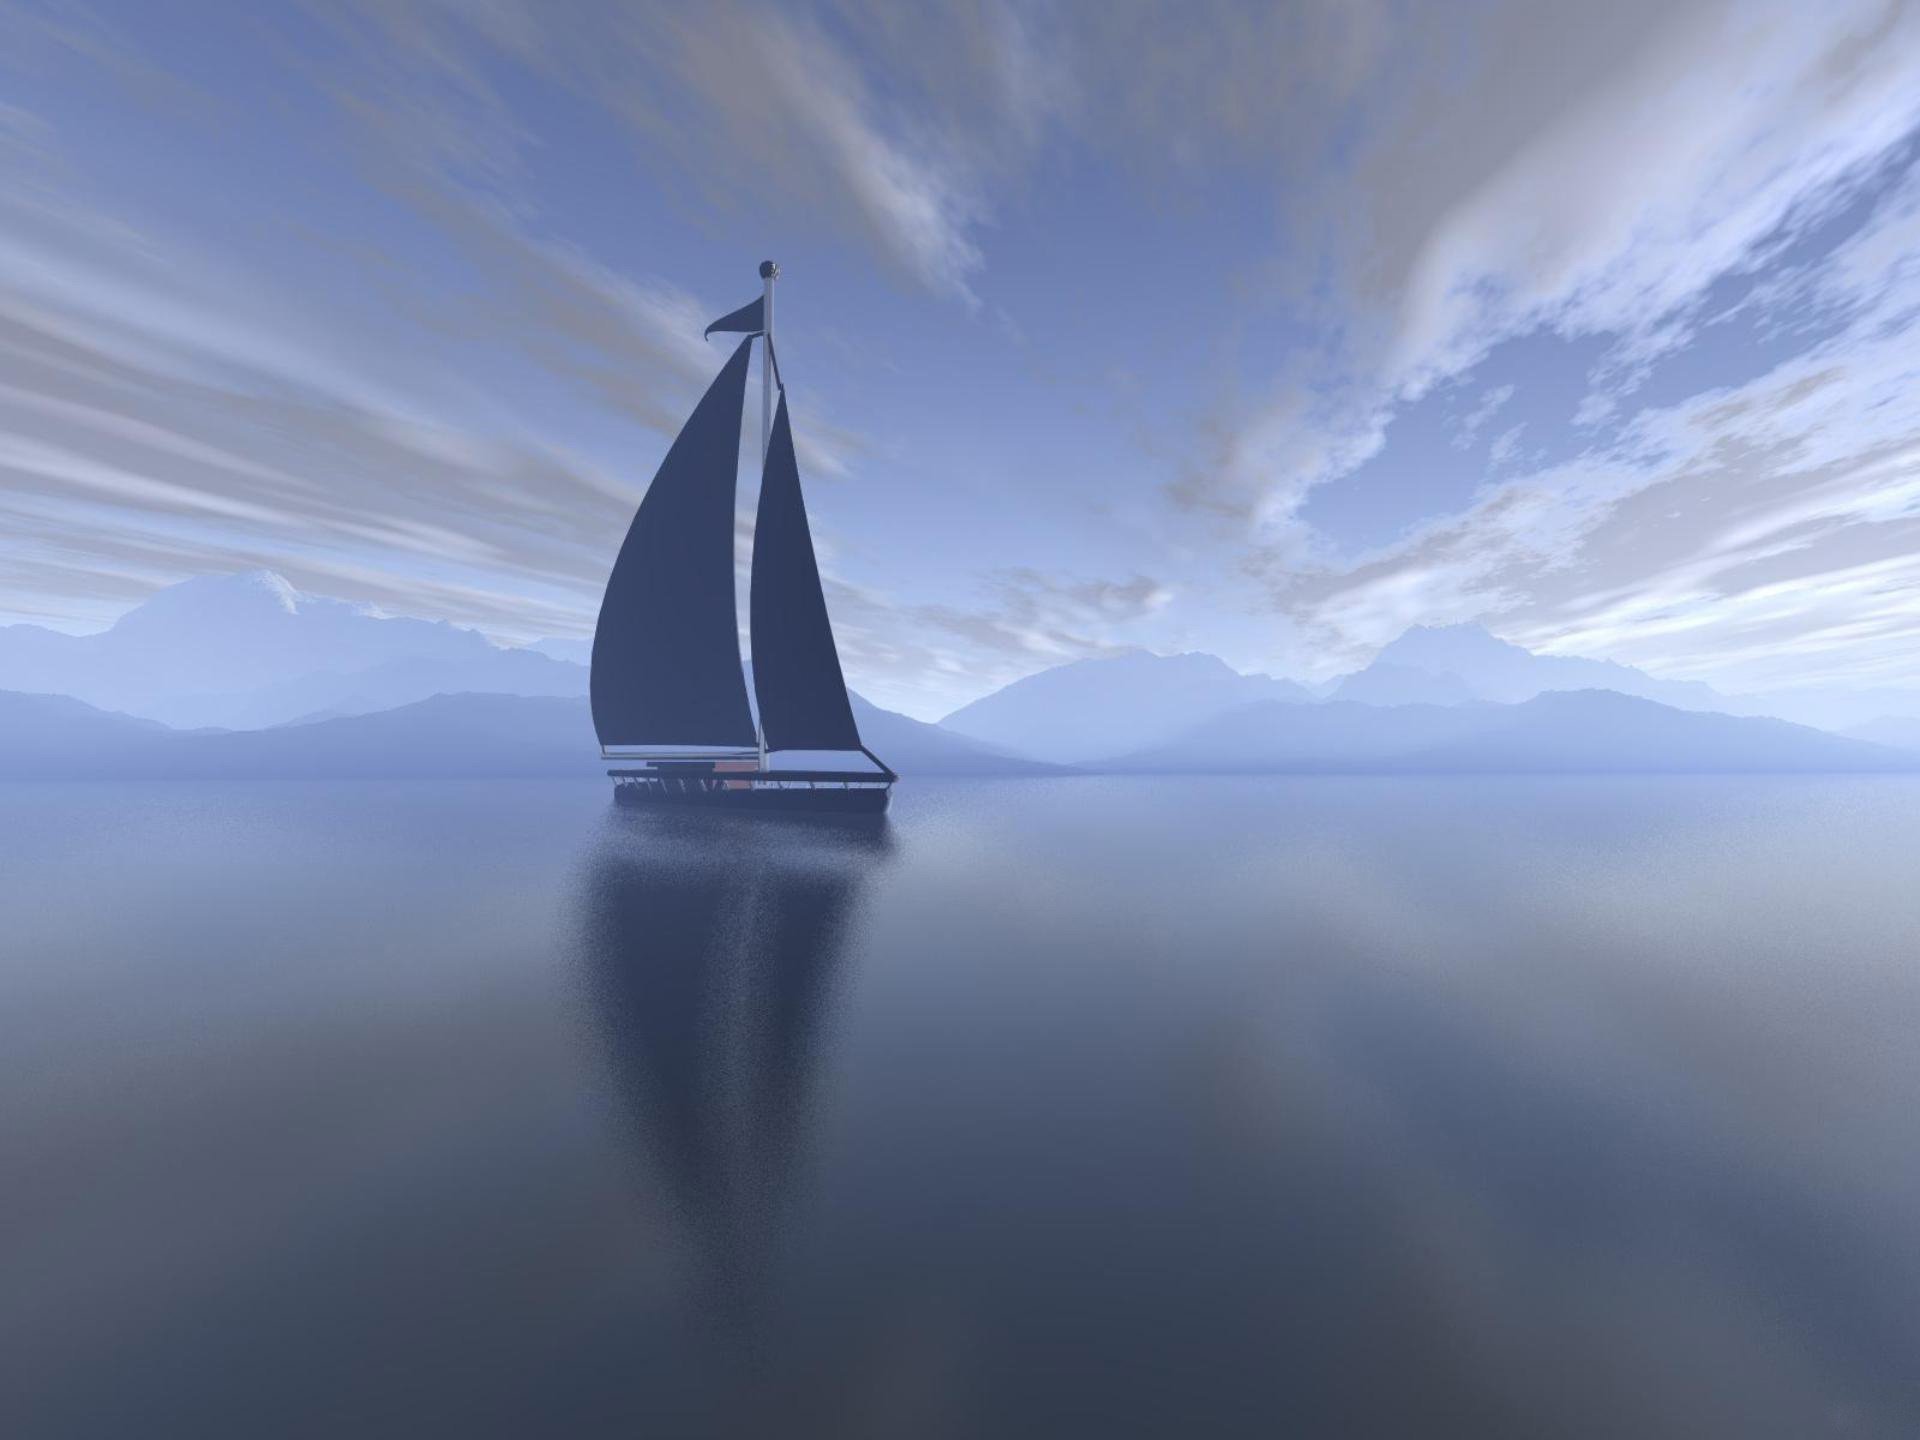 Пейзаж с яхтой на утреннем море